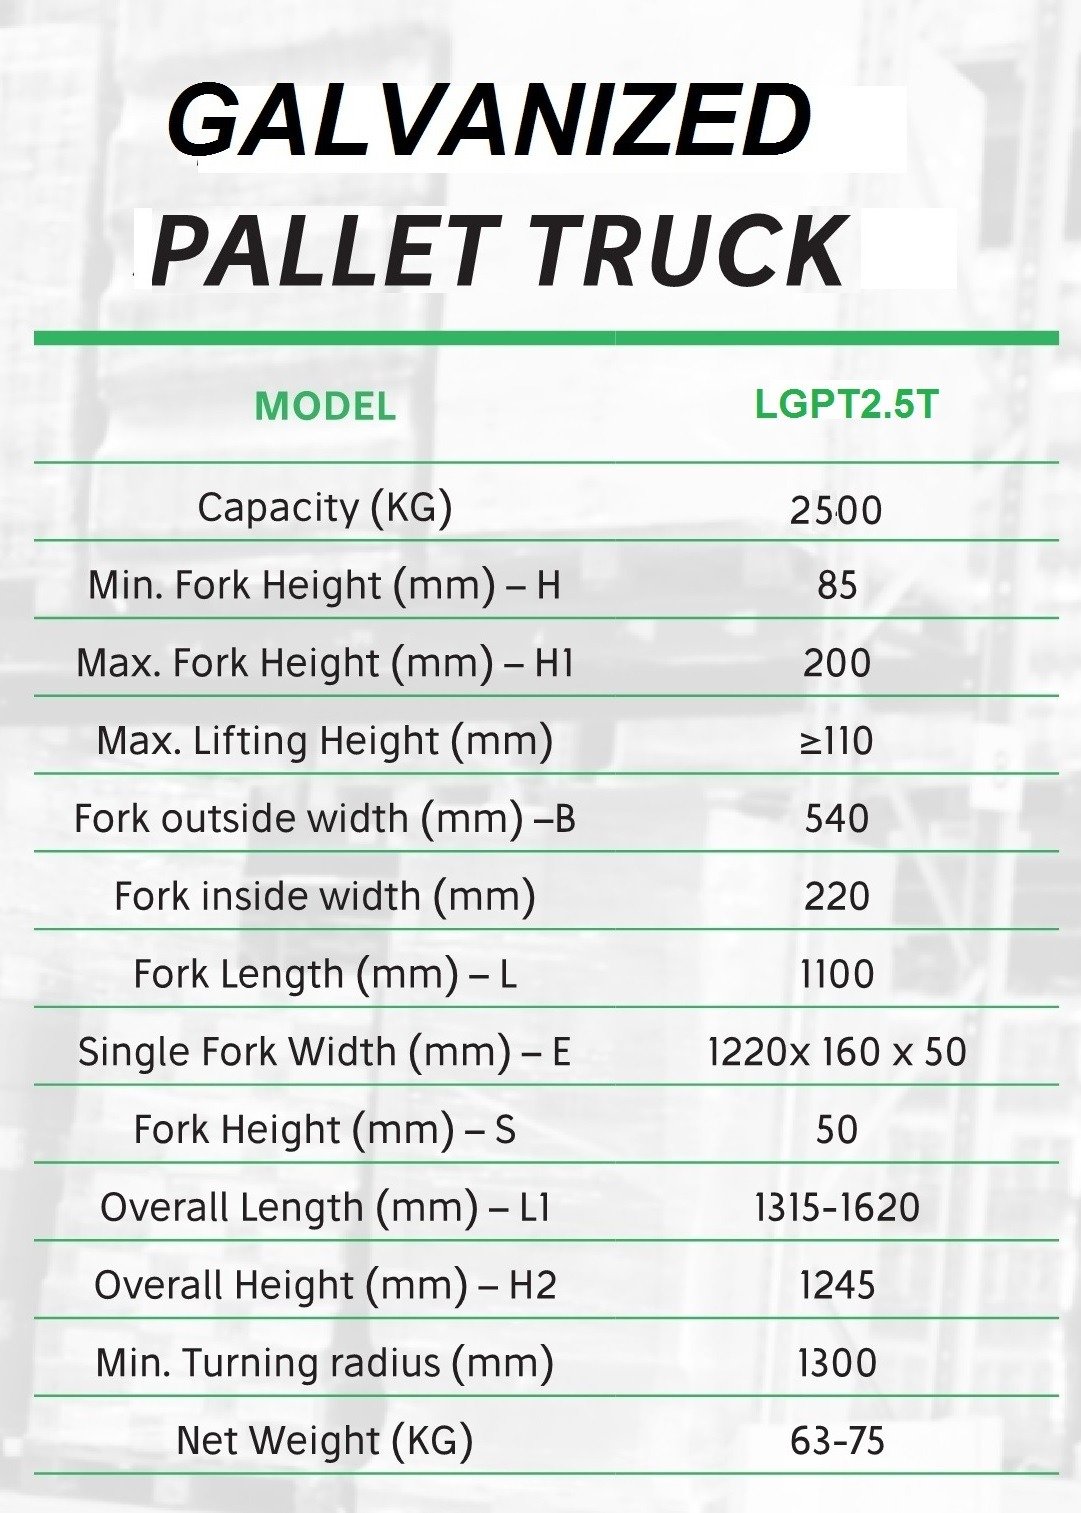 Galvanized Pallet Truck
Hand Pallet Truck
Adjustable Pallet trucks